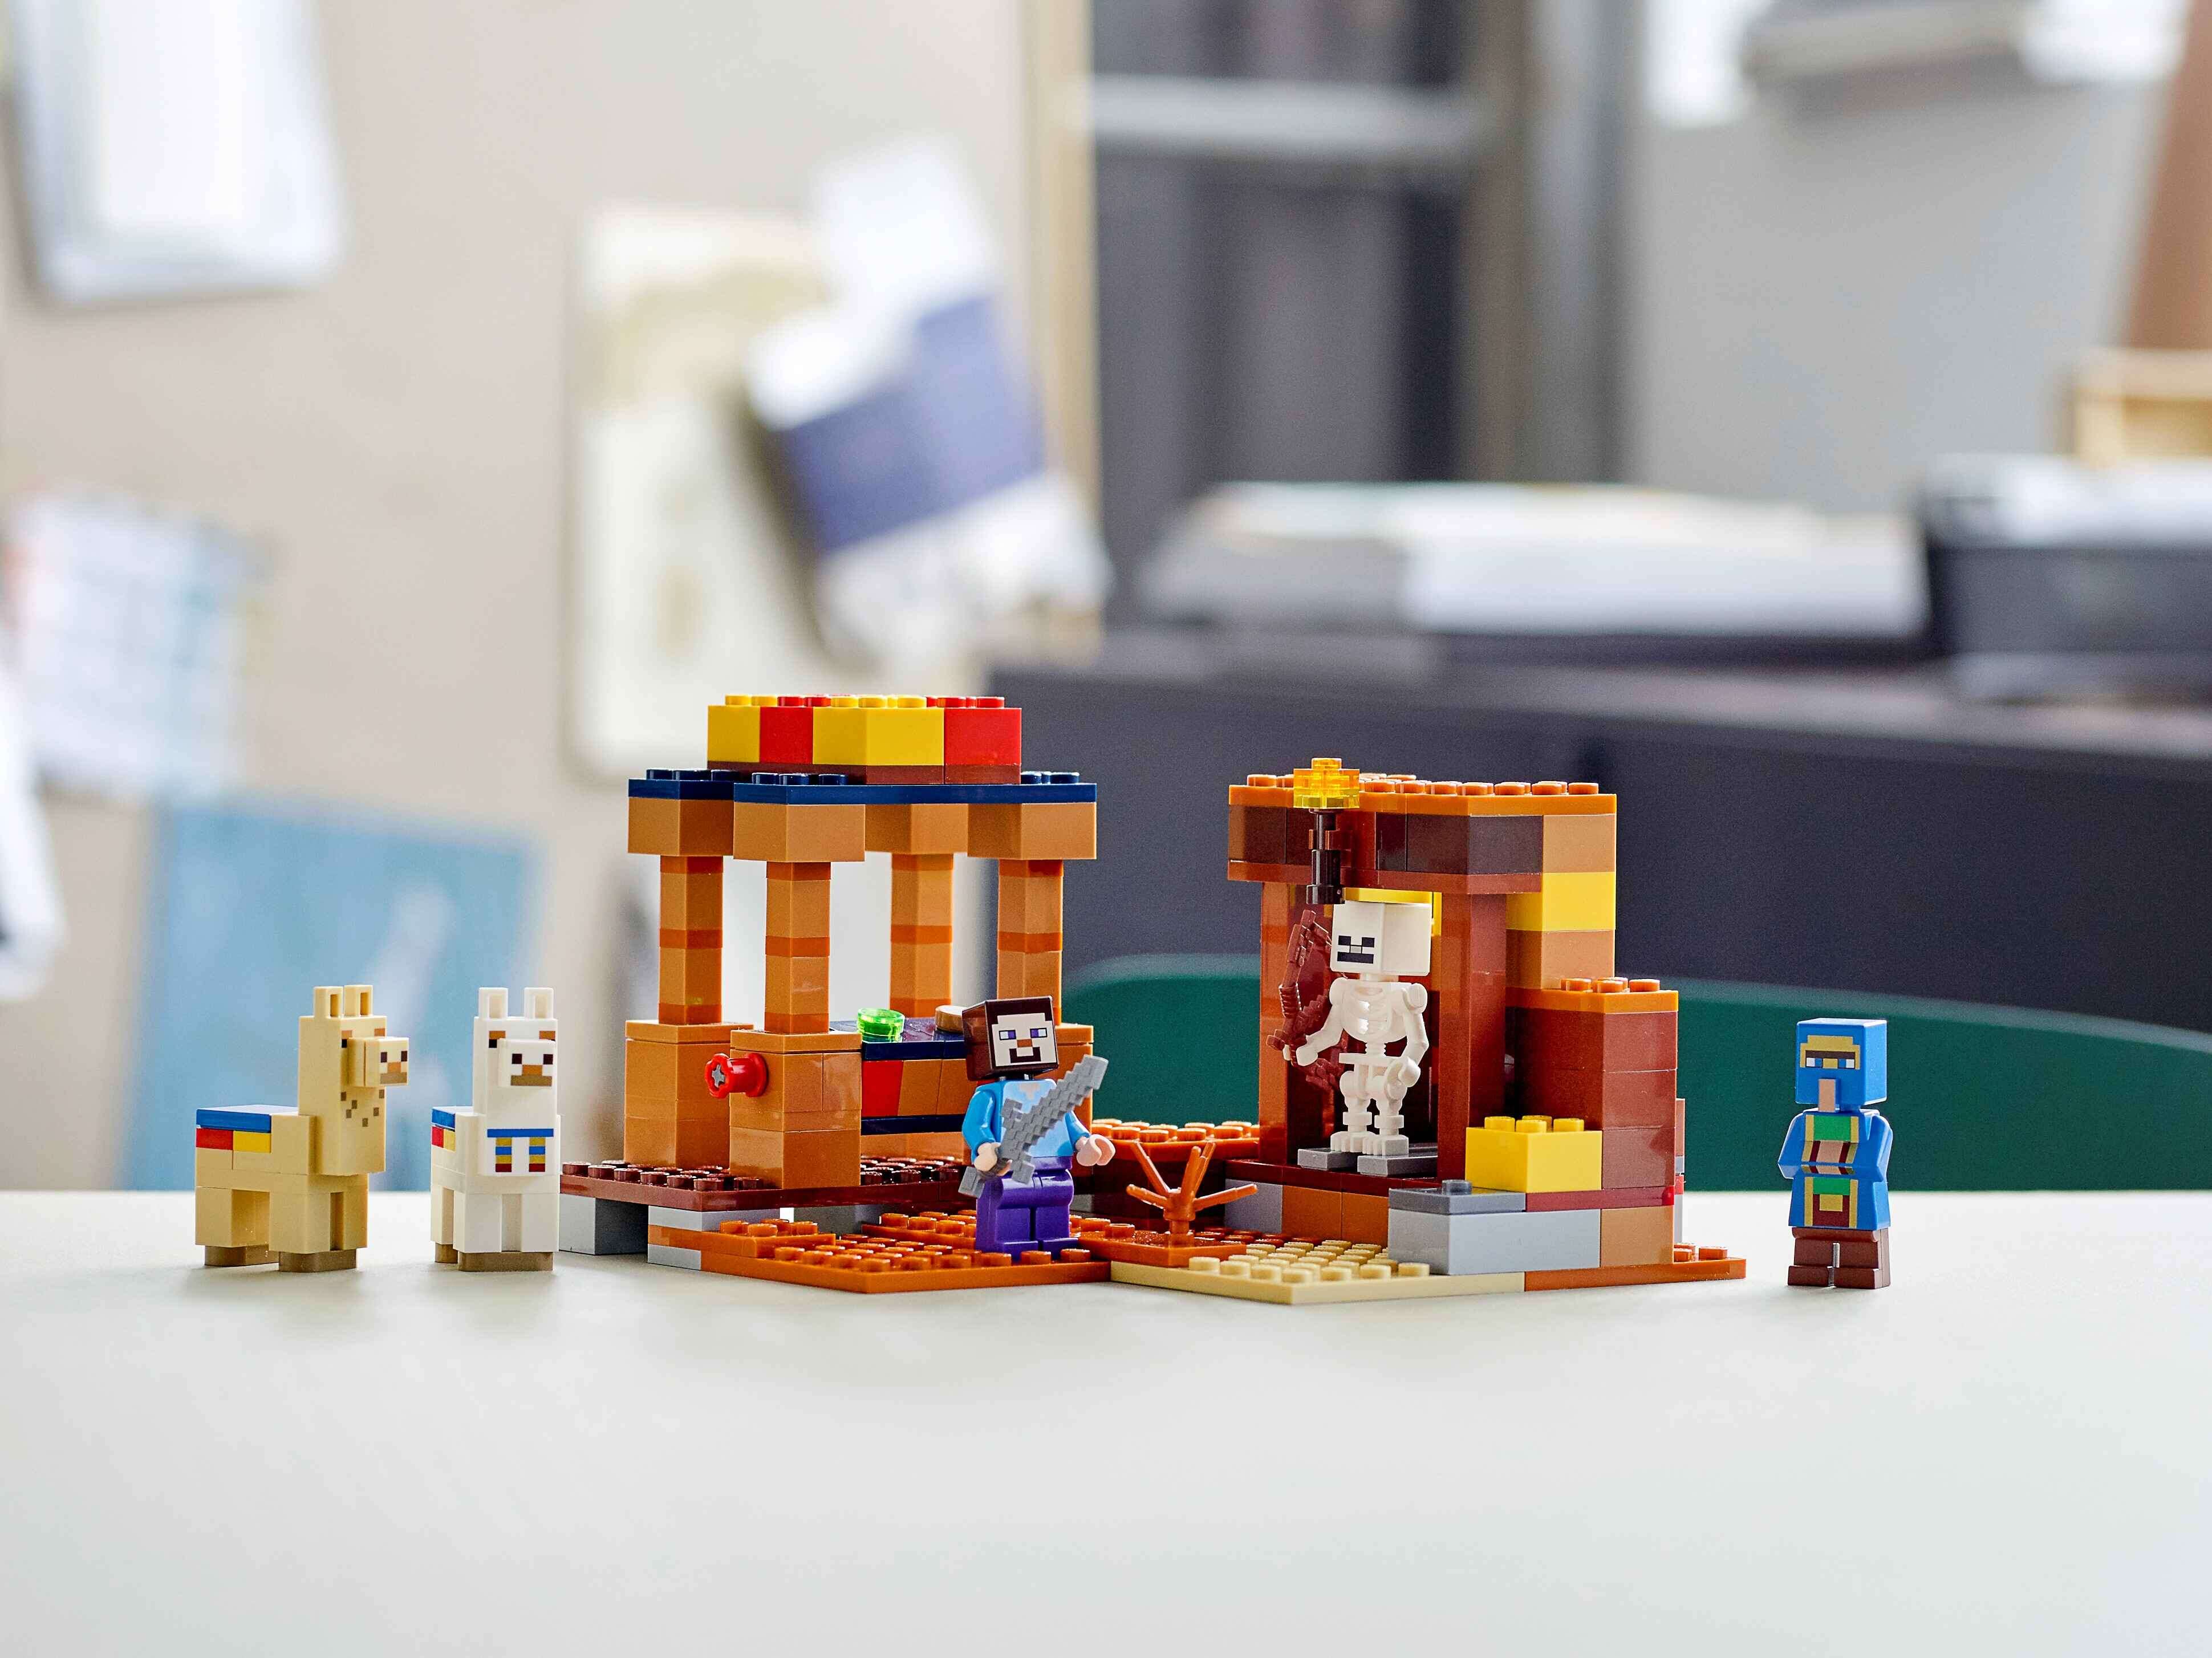 LEGO 21167 Minecraft Der Handelsplatz, Steve, Lamas, Skelett